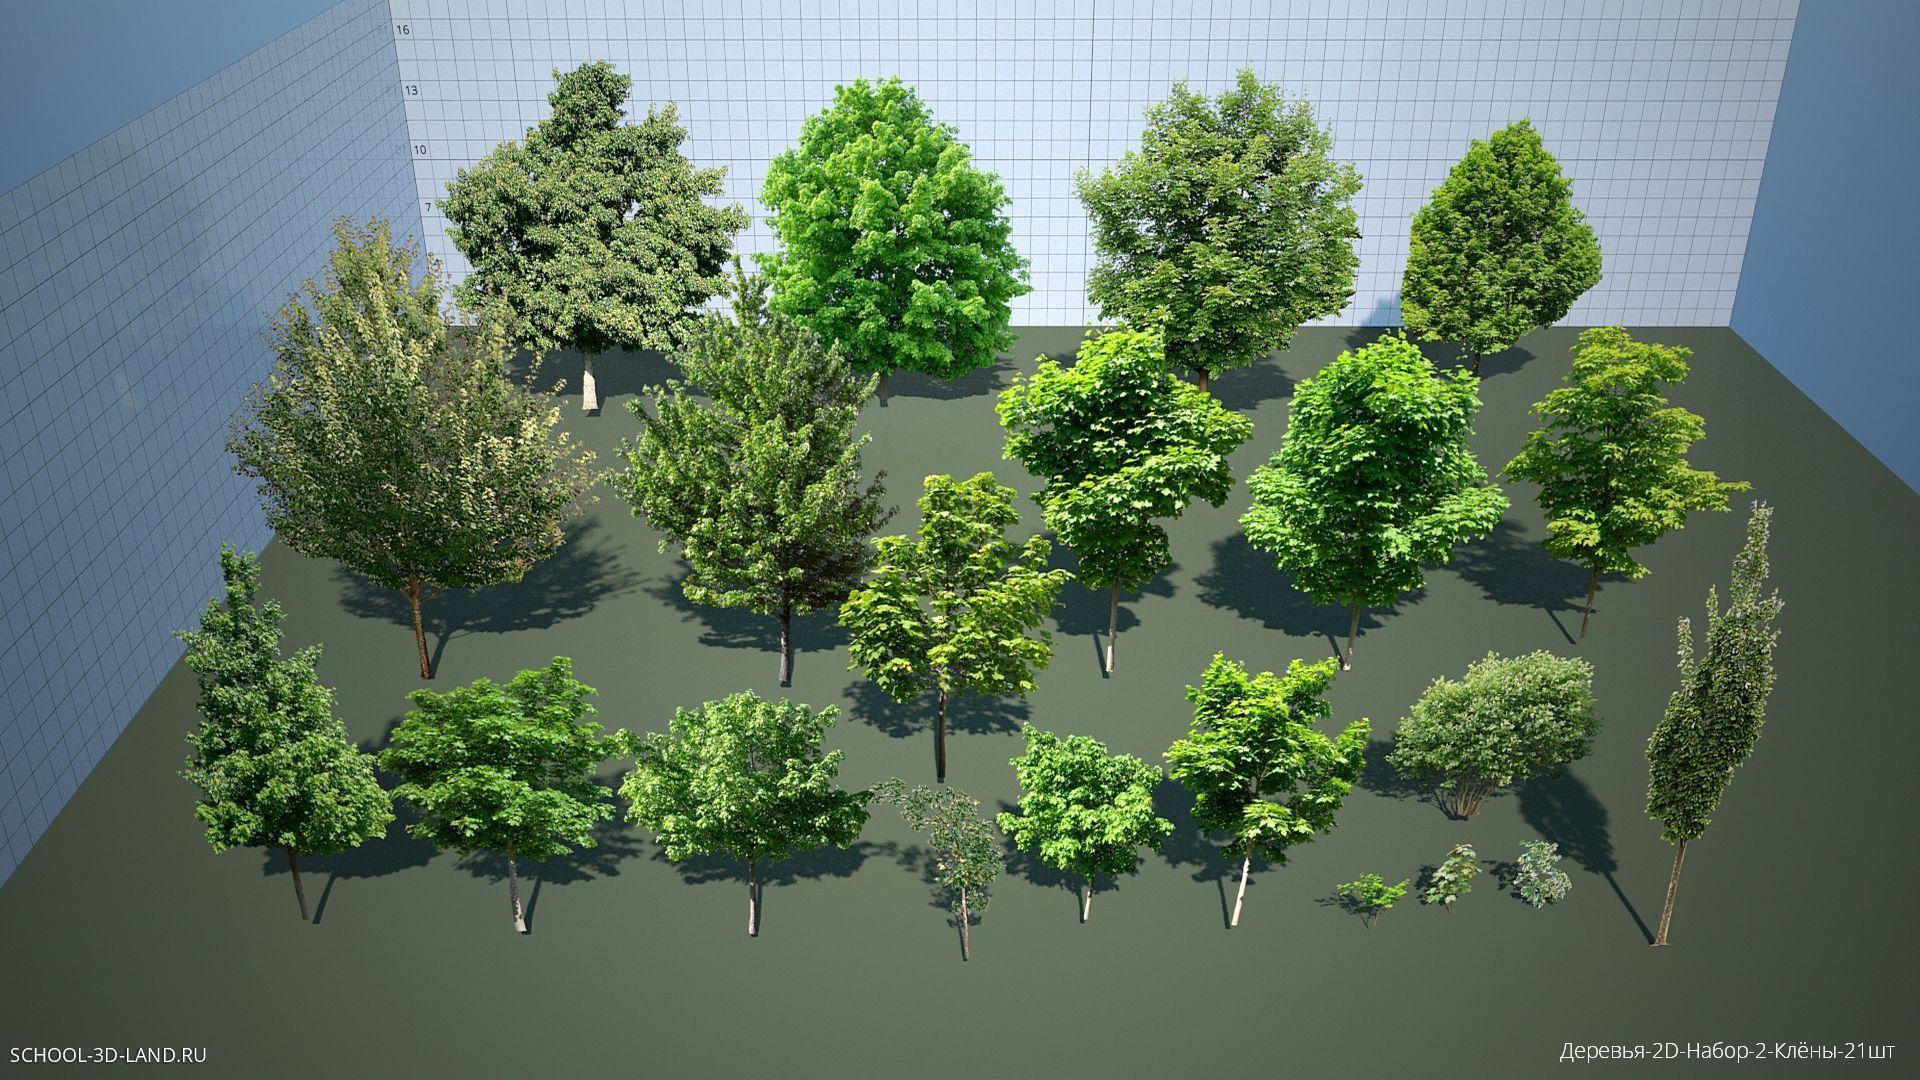 Trees-2D-Set-2-A (21pcs)